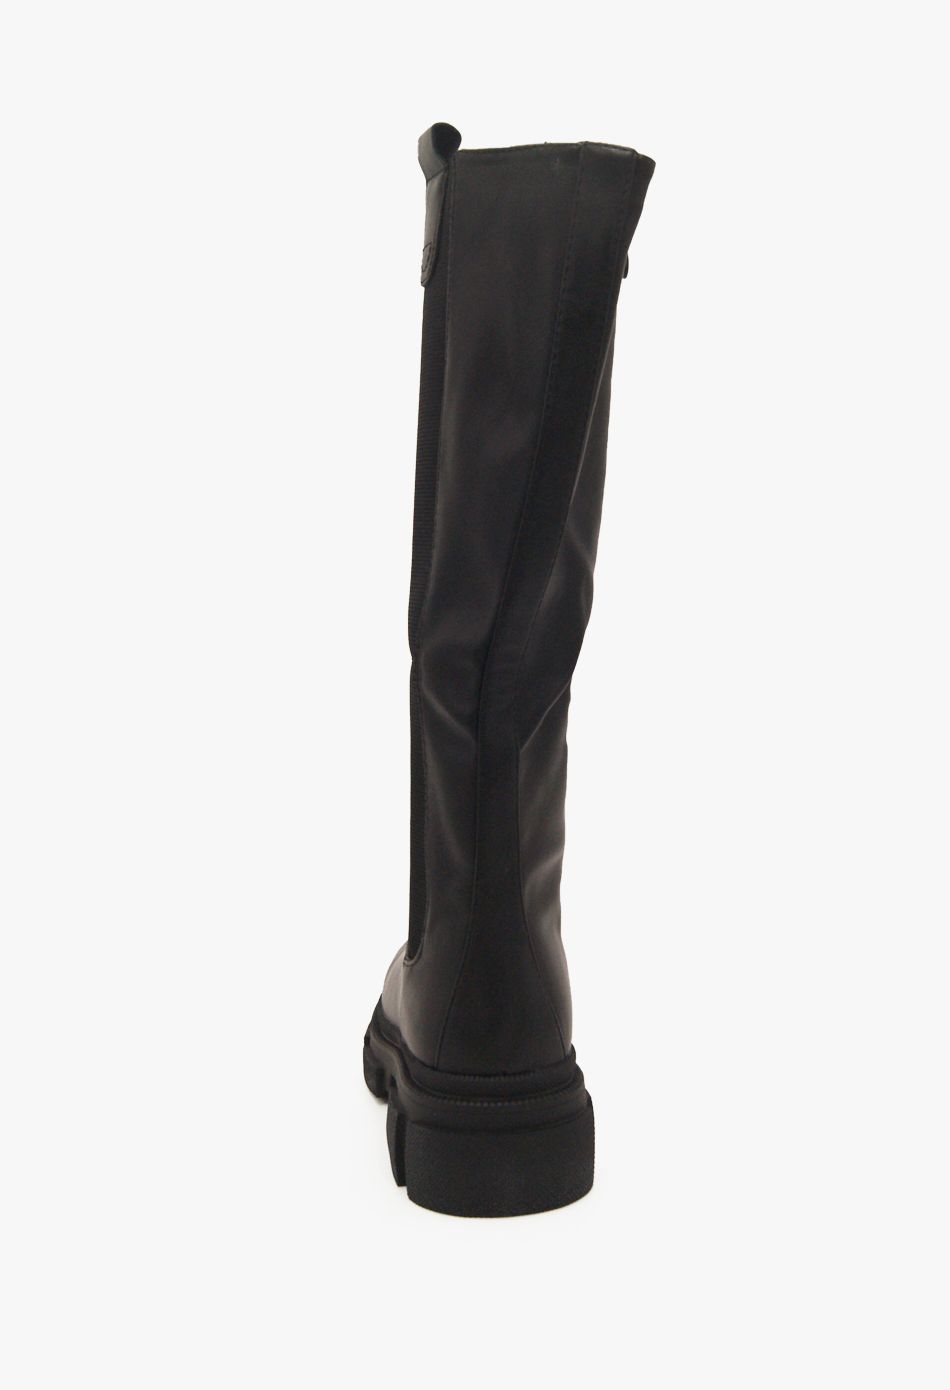 Μπότες με Λάστιχο & Τρακτερωτή Σόλα Μύρο / Y837-2A-black Γυναικεία Mπότες joya.gr